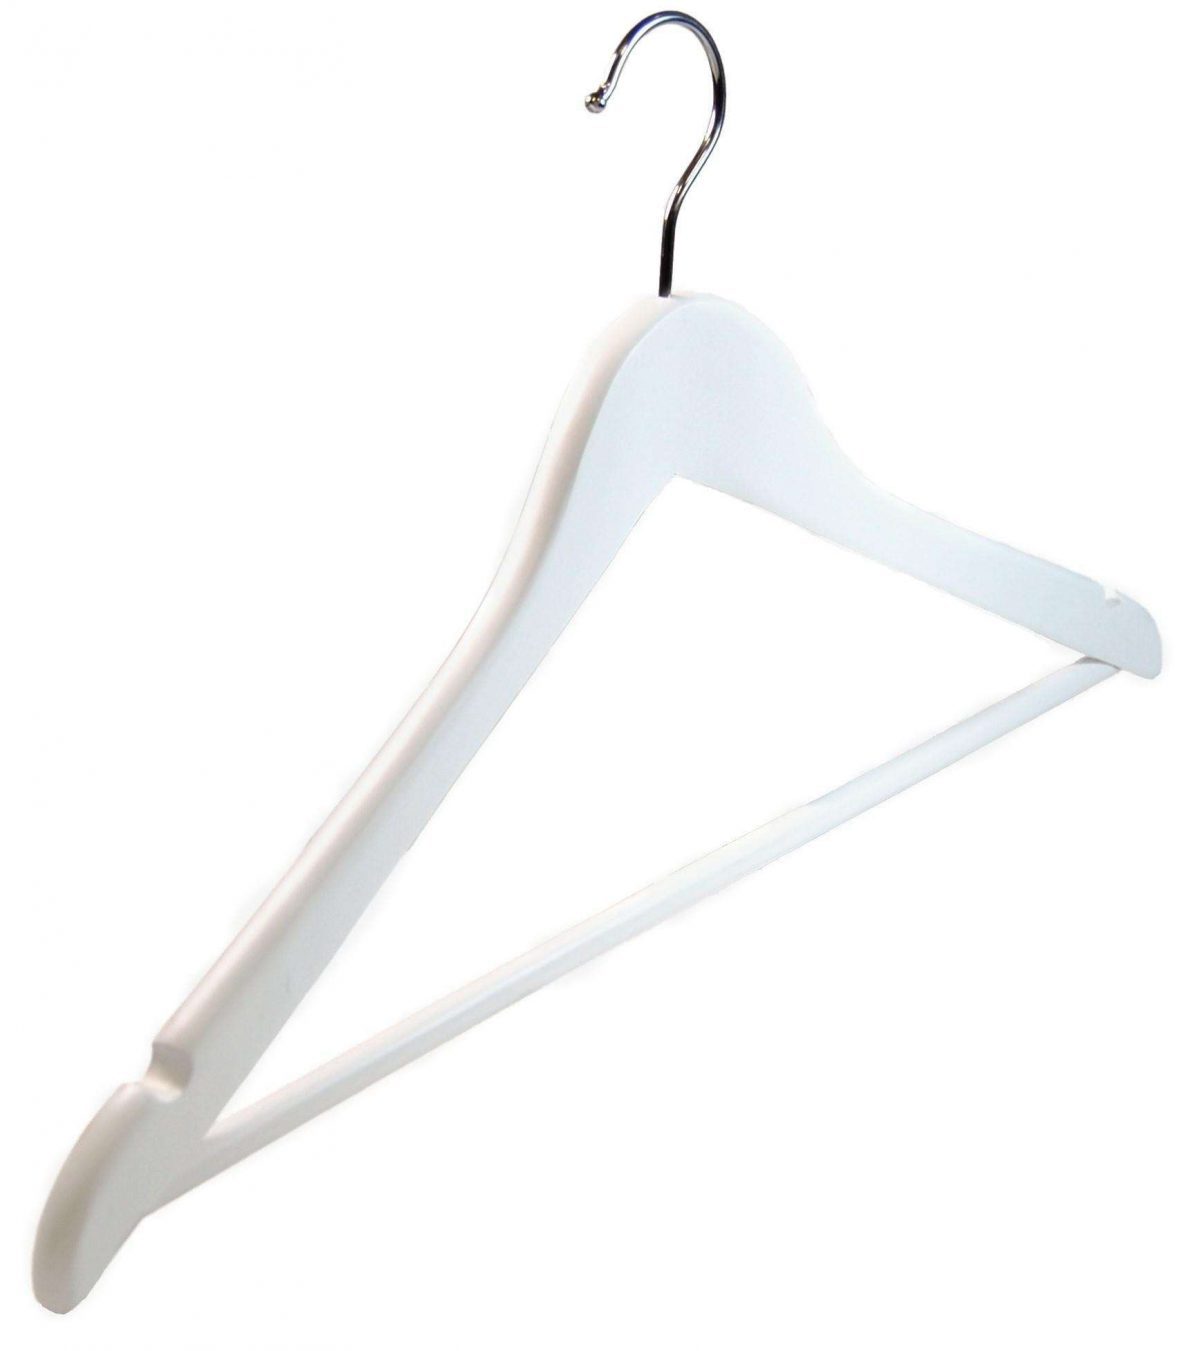 Matt White Angled Suit Hangers (440 mm)